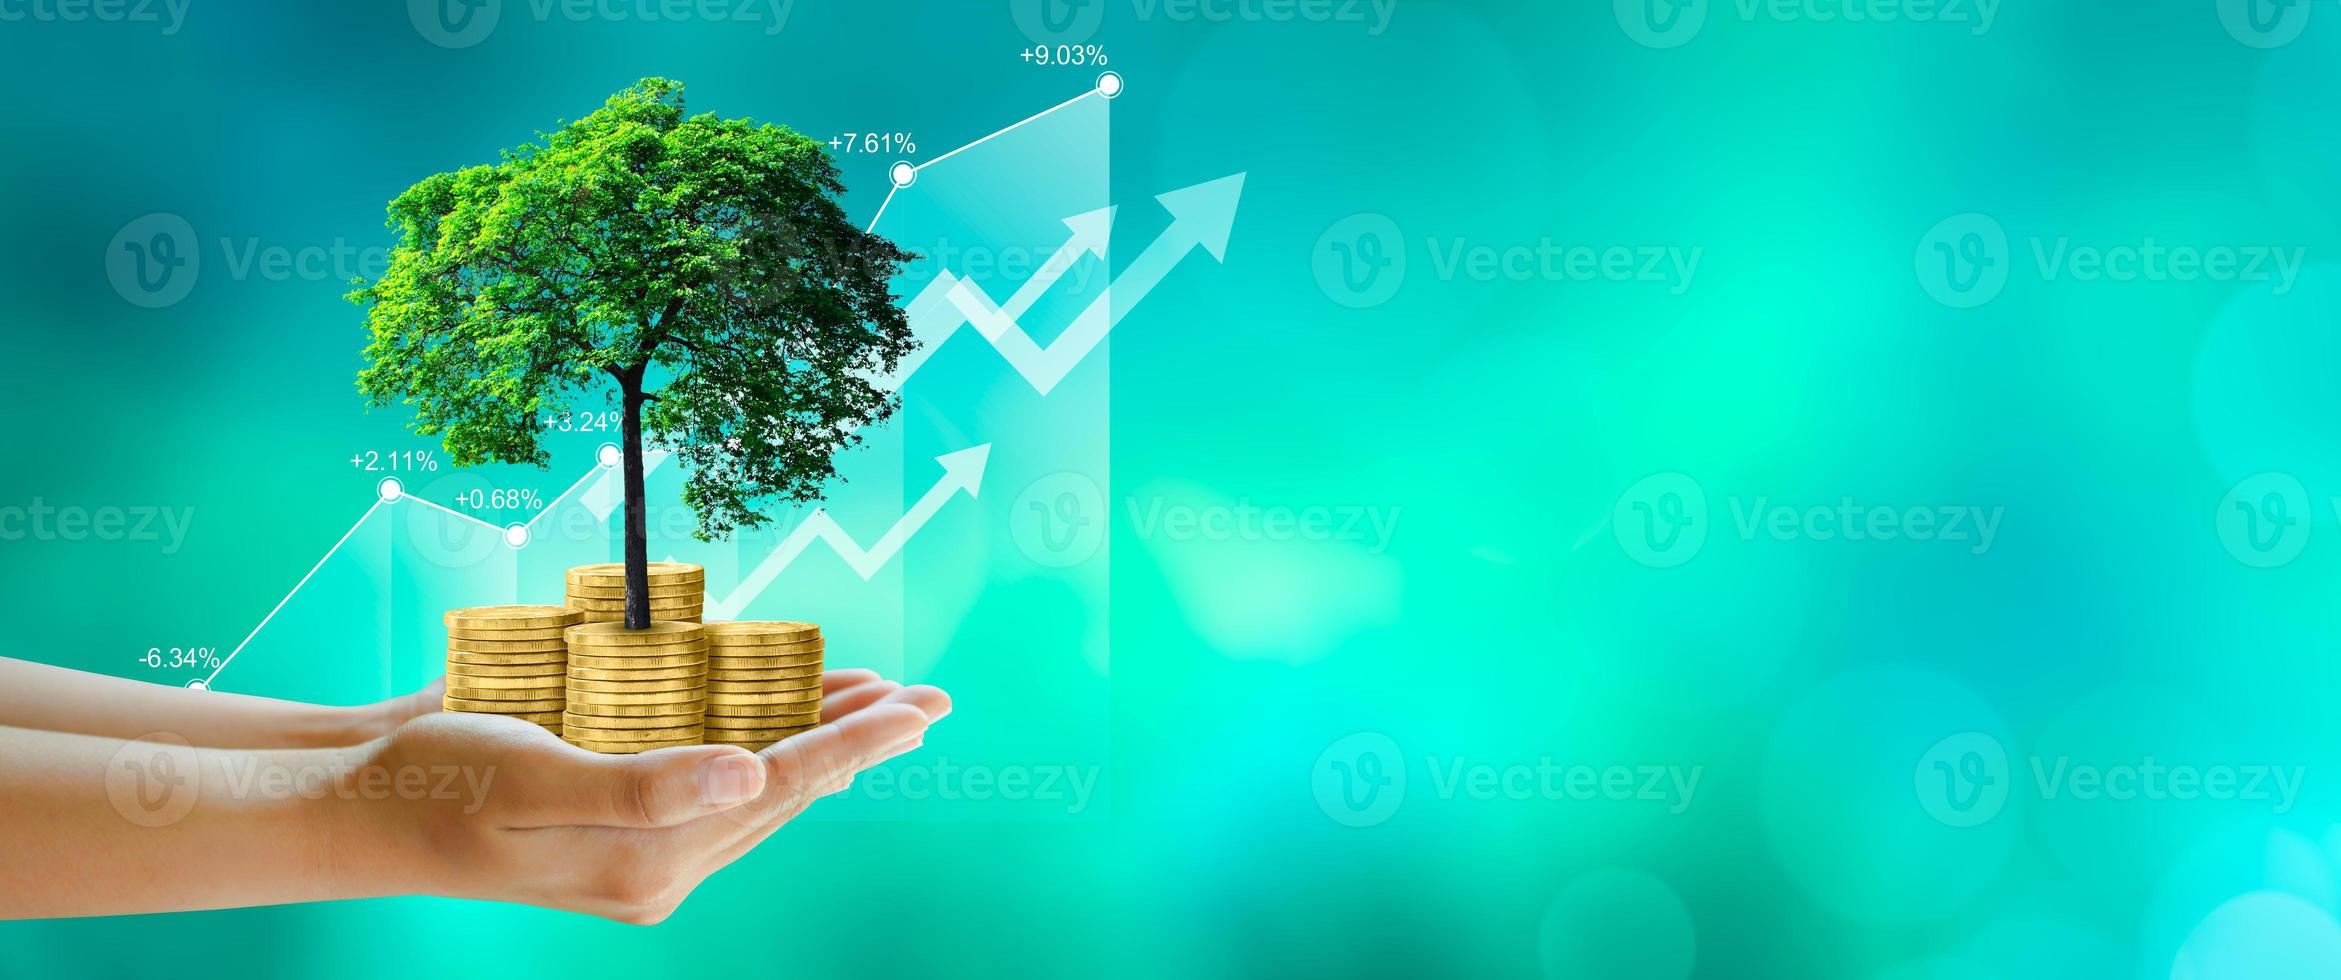 Mano sujetando el árbol en crecimiento en monedas con gráfico de stock sobre fondo verde foto